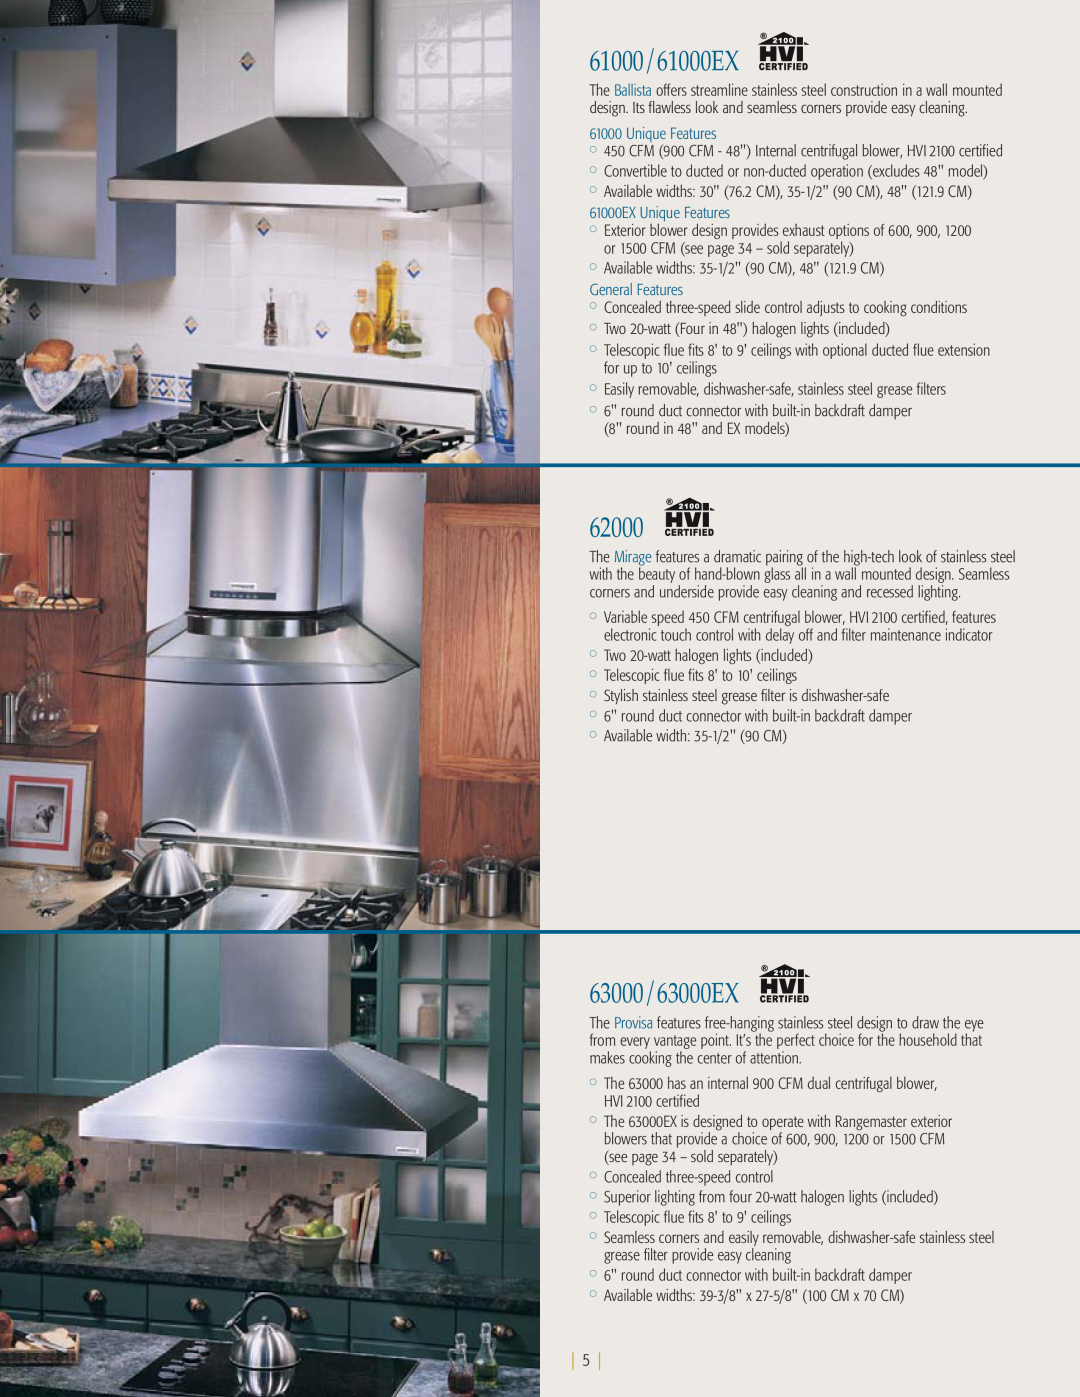 NuTone kitchen ventilation manual 61000/61000EX, 62000, 63000/63000EX, 61000EX Unique Features, General Features 